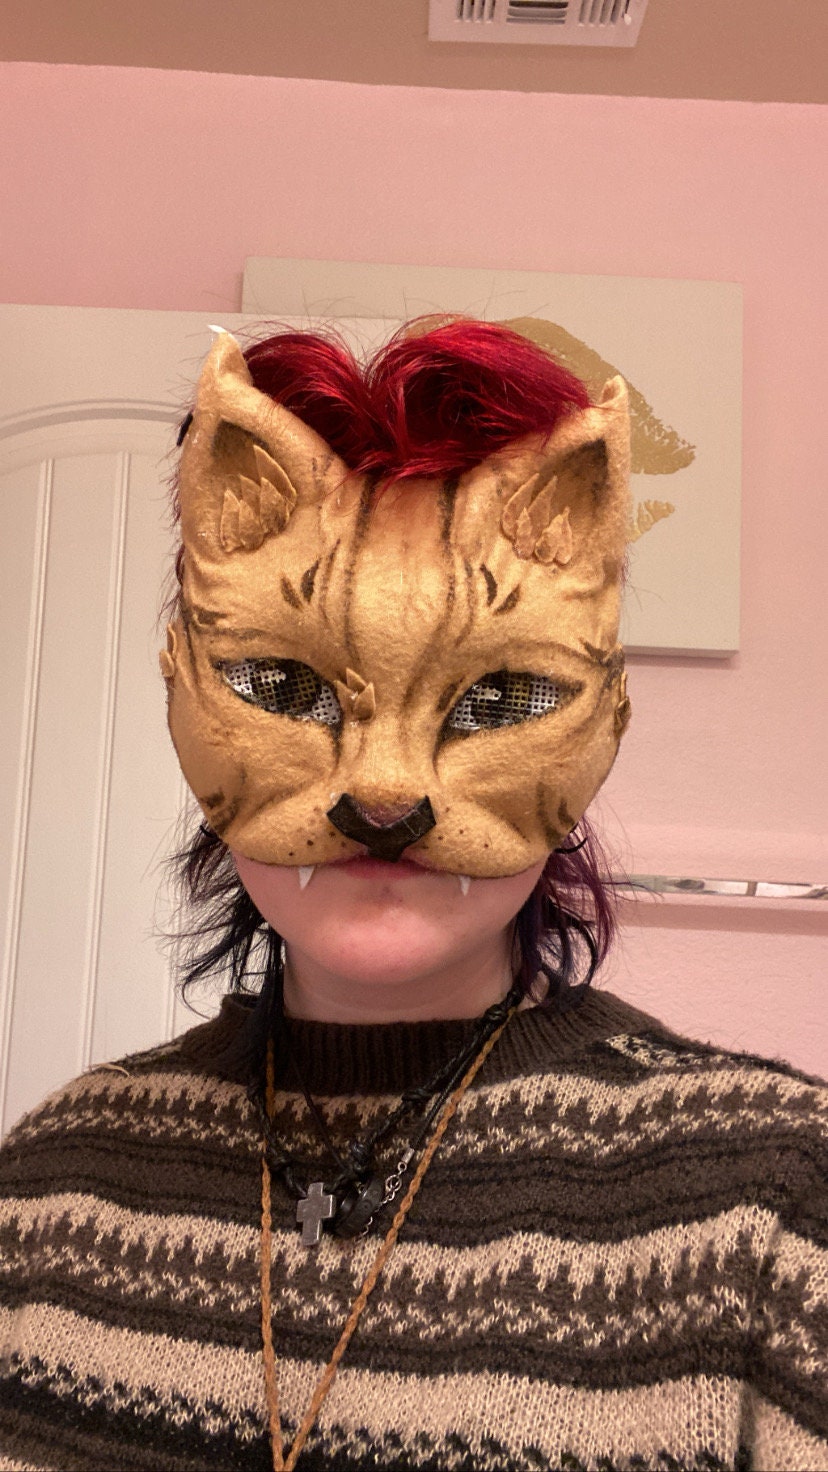 alien kitty therian mask ;3  Cat mask, Cool masks, Felt animal masks